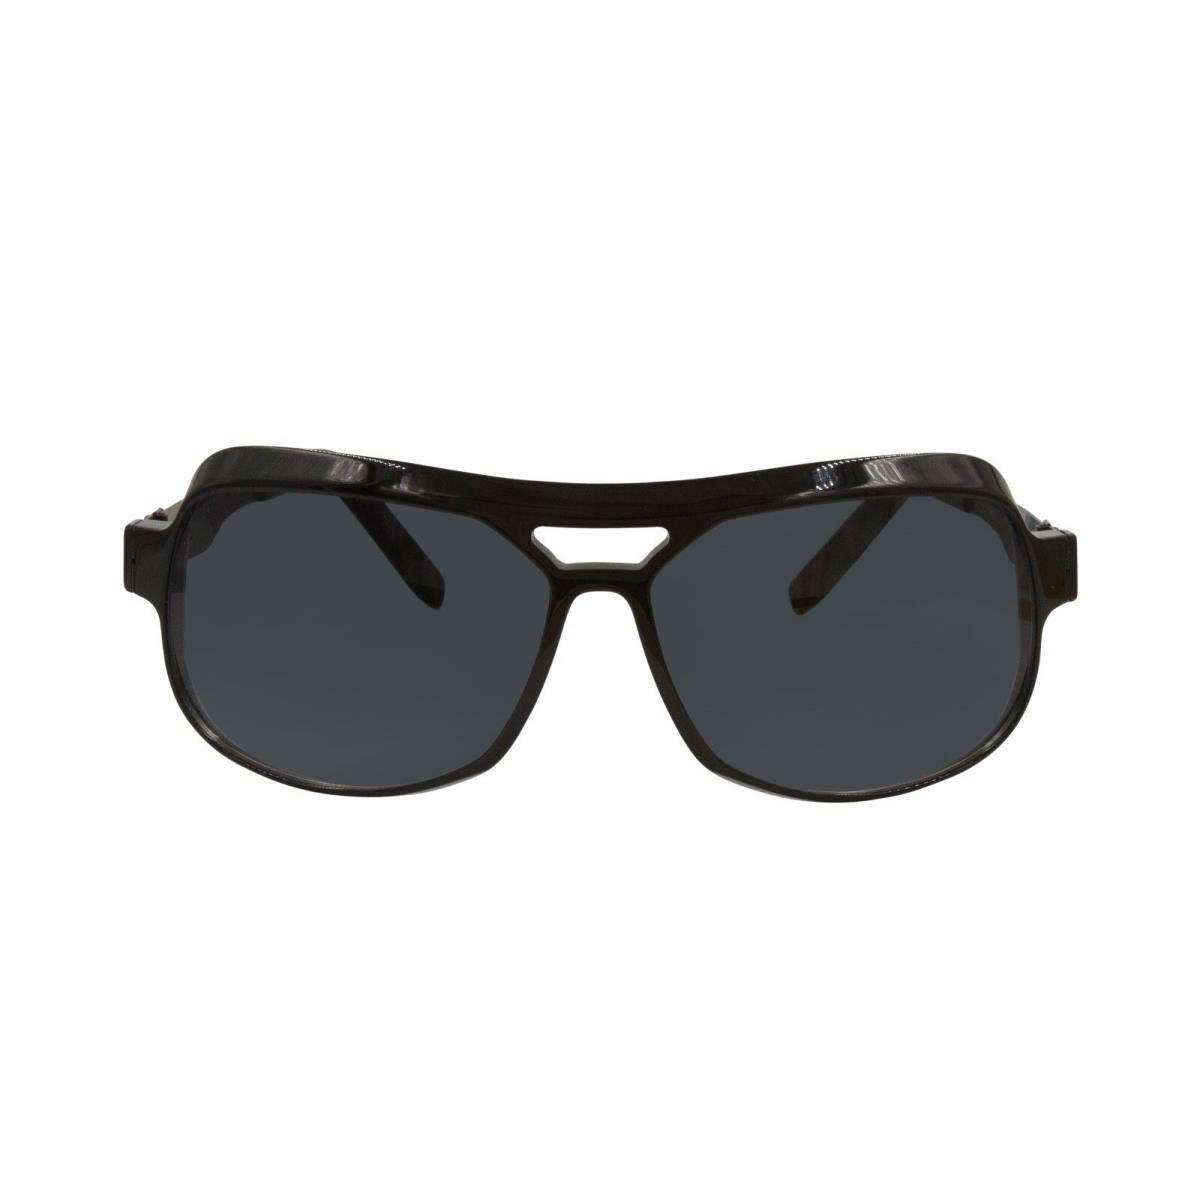 ic! berlin sunglasses MARCELLO - Black Frame, Black Lens